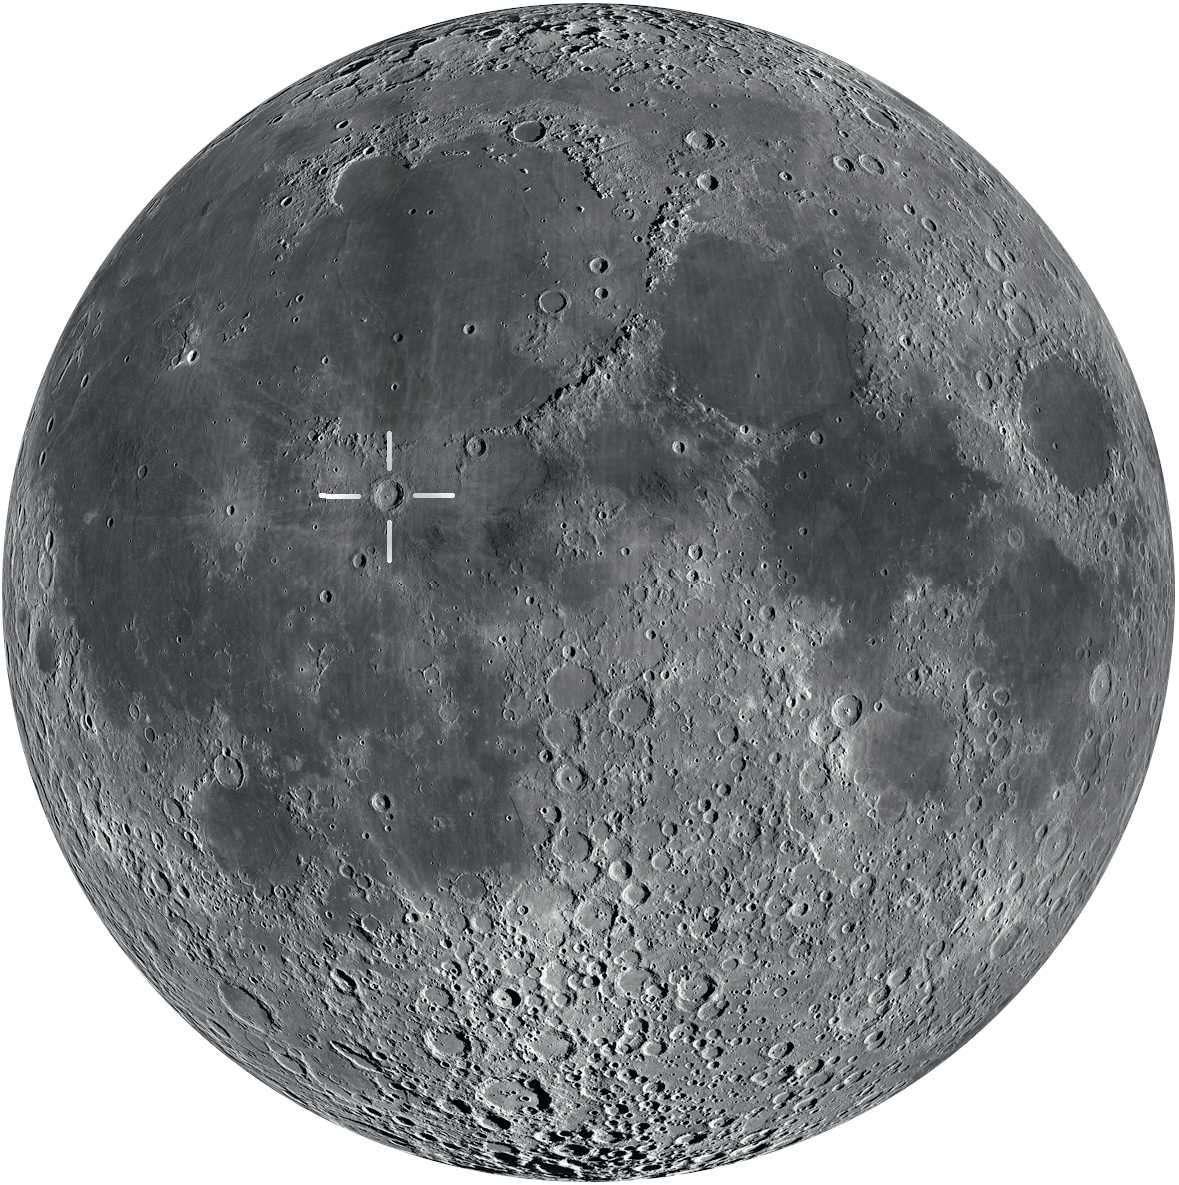 Copérnico pode ser encontrada perto do centro da lua. A melhor altura para observá-la é após o primeiro trimestre, até pouco antes da lua cheia. 